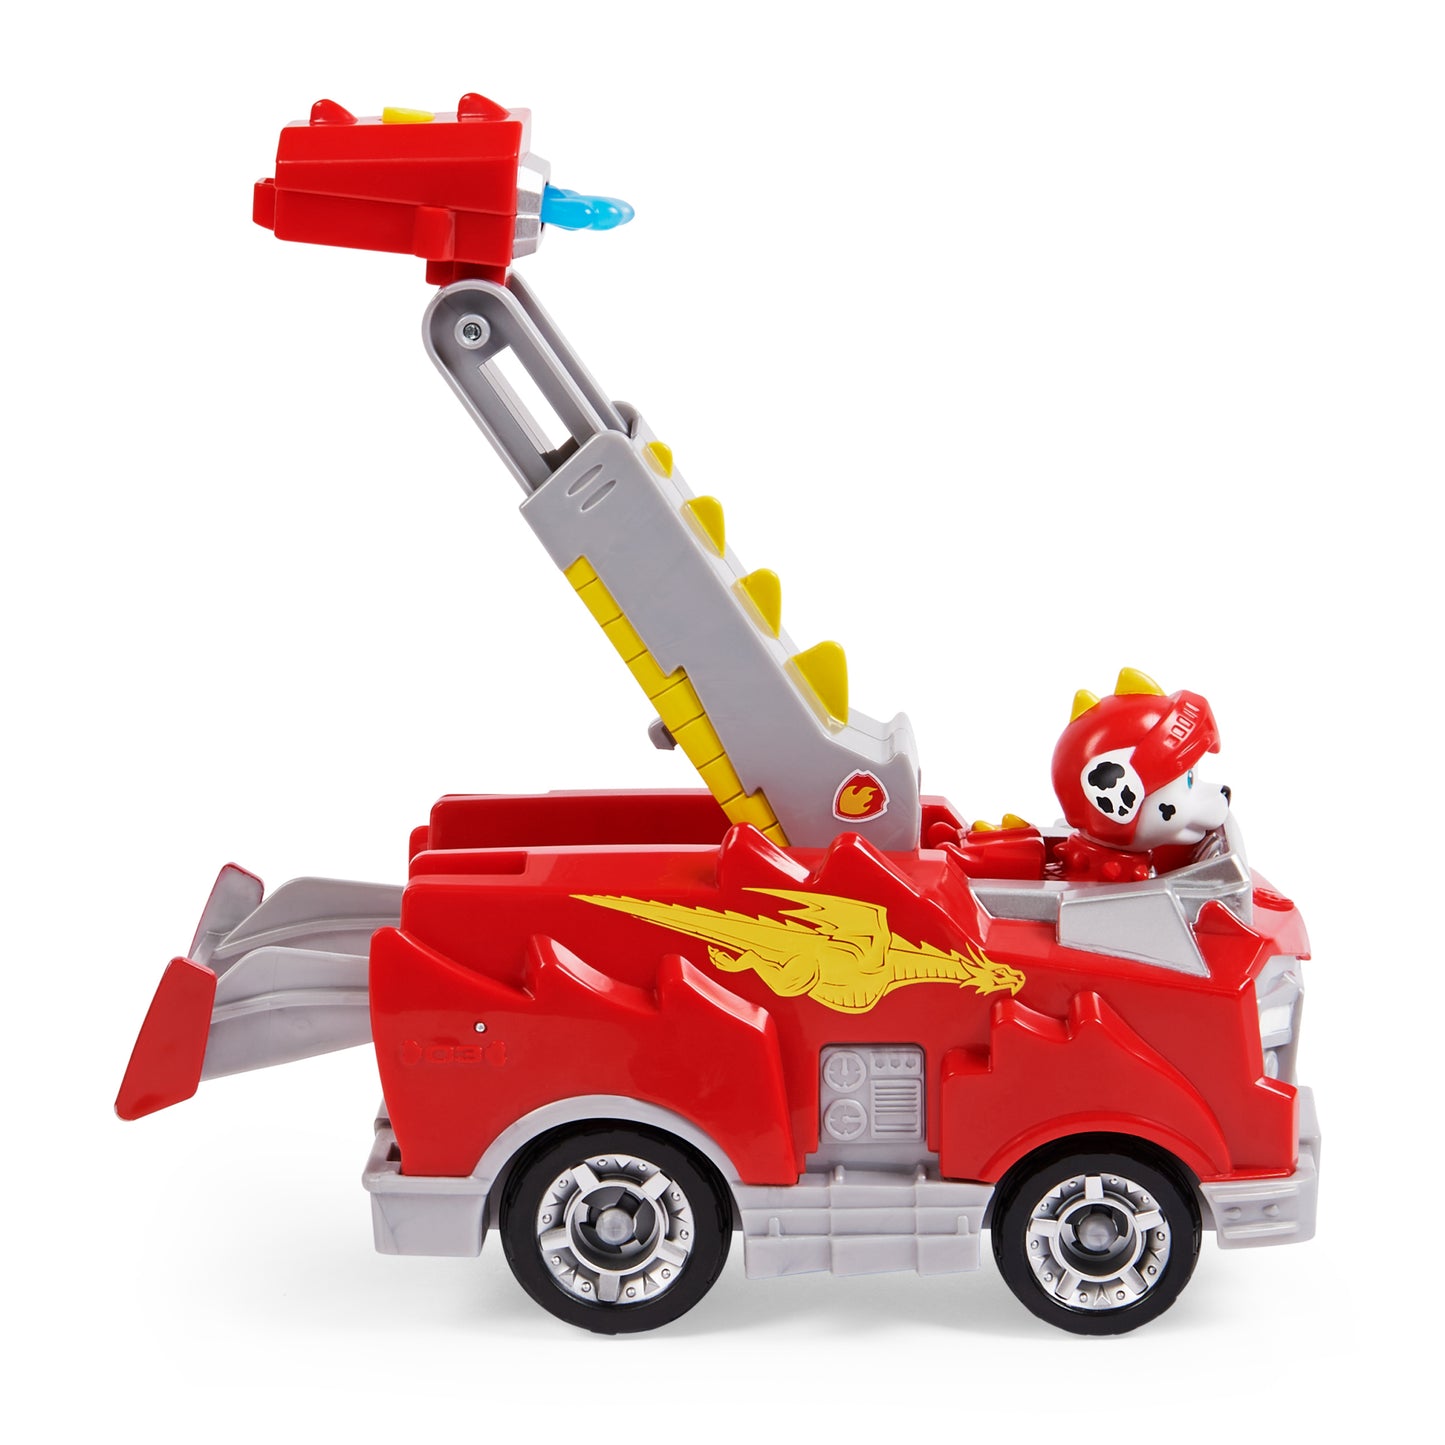 PAW PatrolRescue Knights Marshall Transforming Toy Car mit Sammlerstück Action Figur, Kinder Spielzeuge für 3 Jahre und älter